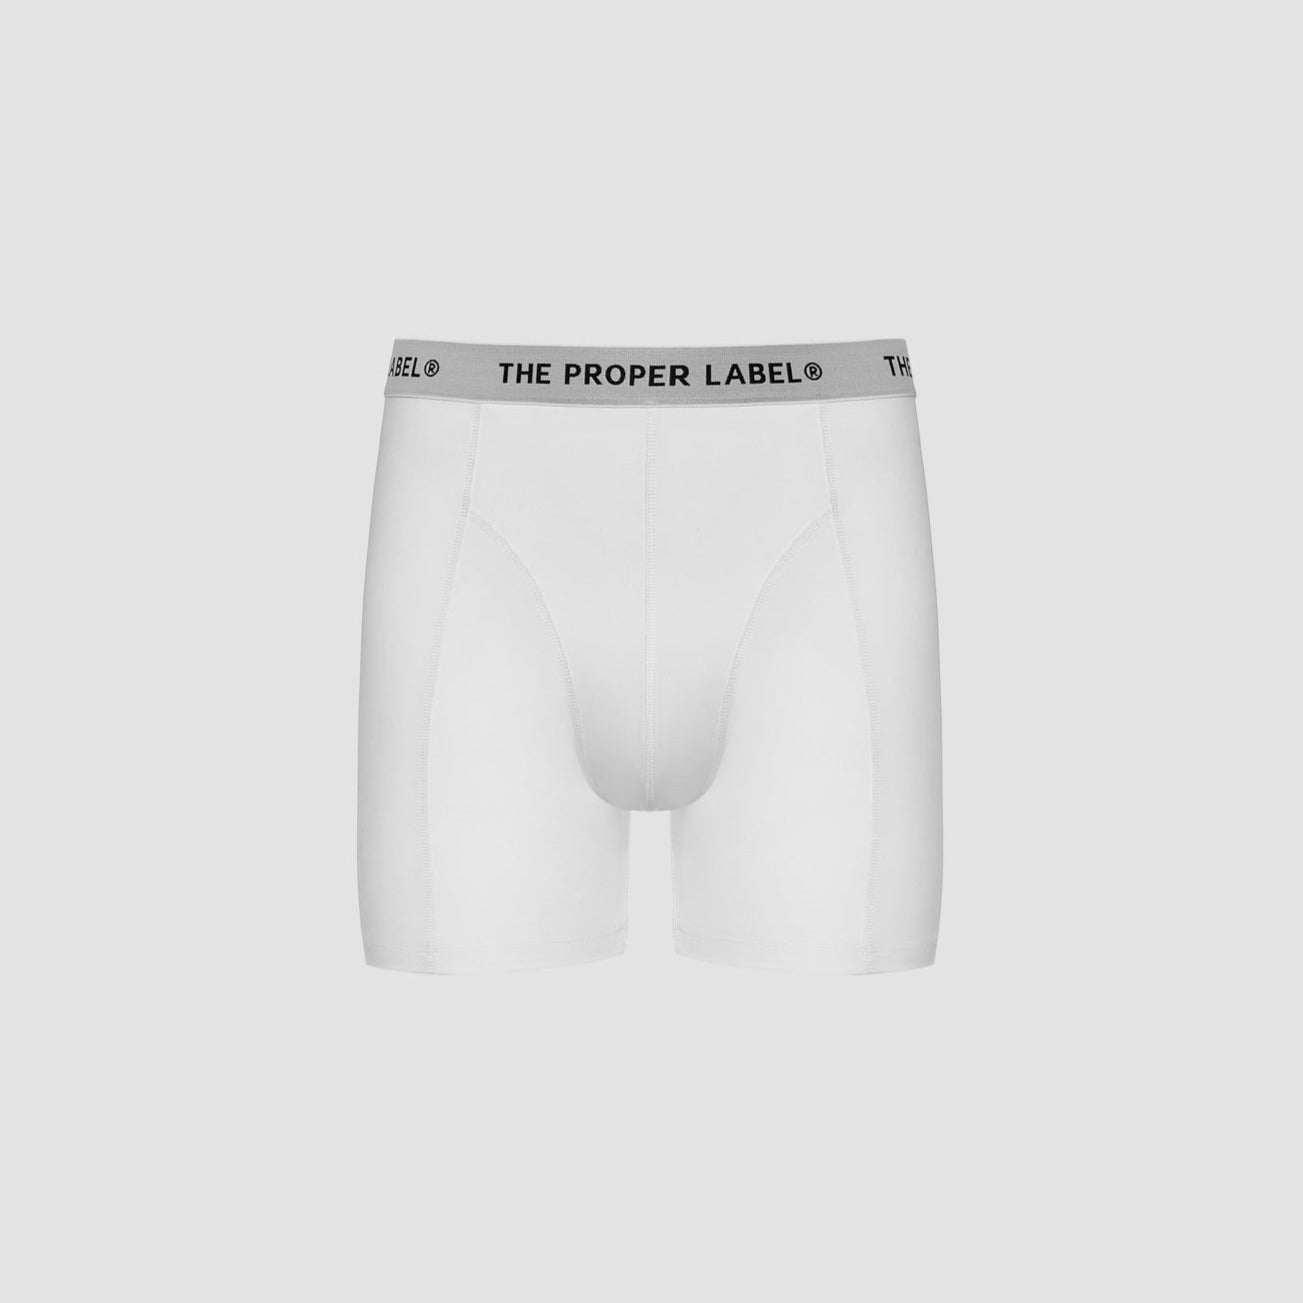 The Proper Underwear ™ - The Proper Label ™